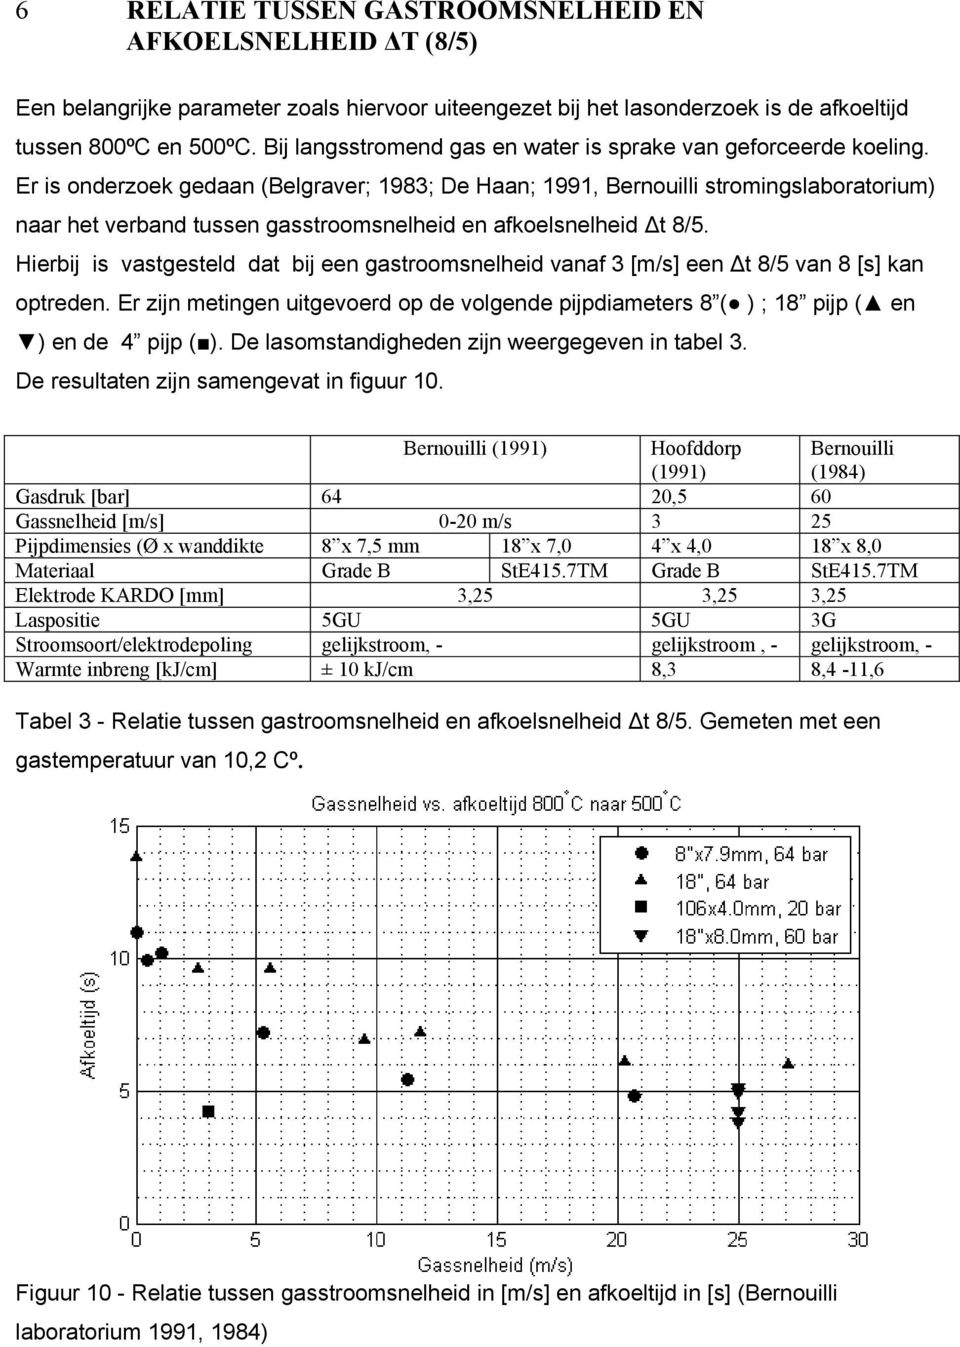 Er is onderzoek gedaan (Belgraver; 1983; De Haan; 1991, Bernouilli stromingslaboratorium) naar het verband tussen gasstroomsnelheid en afkoelsnelheid t 8/5.